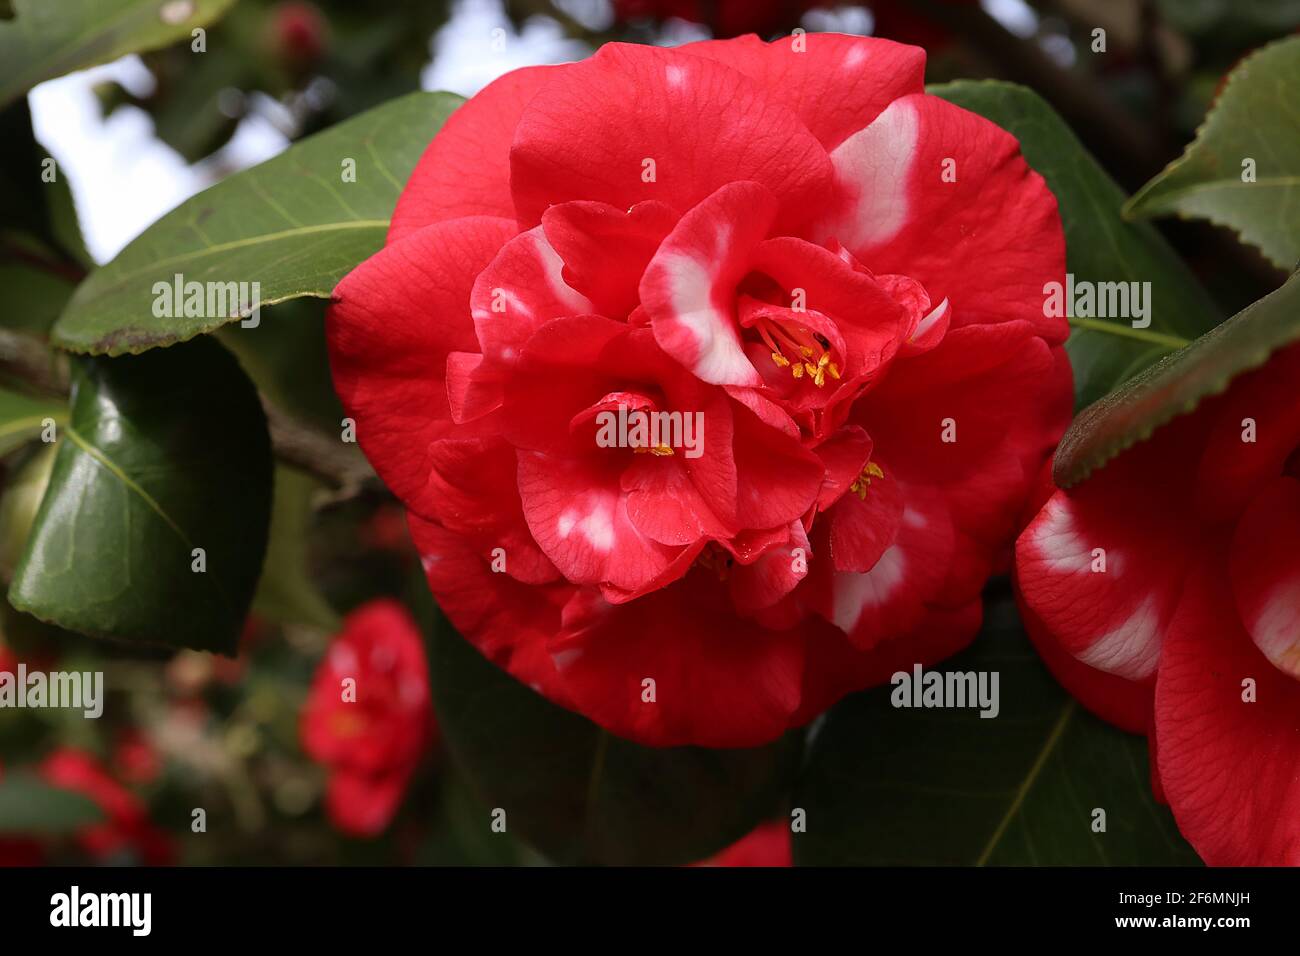 Camellia japonica ‘Adolphe Audusson variegata’ Camellia Adolphe Audusson – fiore rosso doppio a forma di ponia con spruzzi di bianco, aprile, Inghilterra, Regno Unito Foto Stock